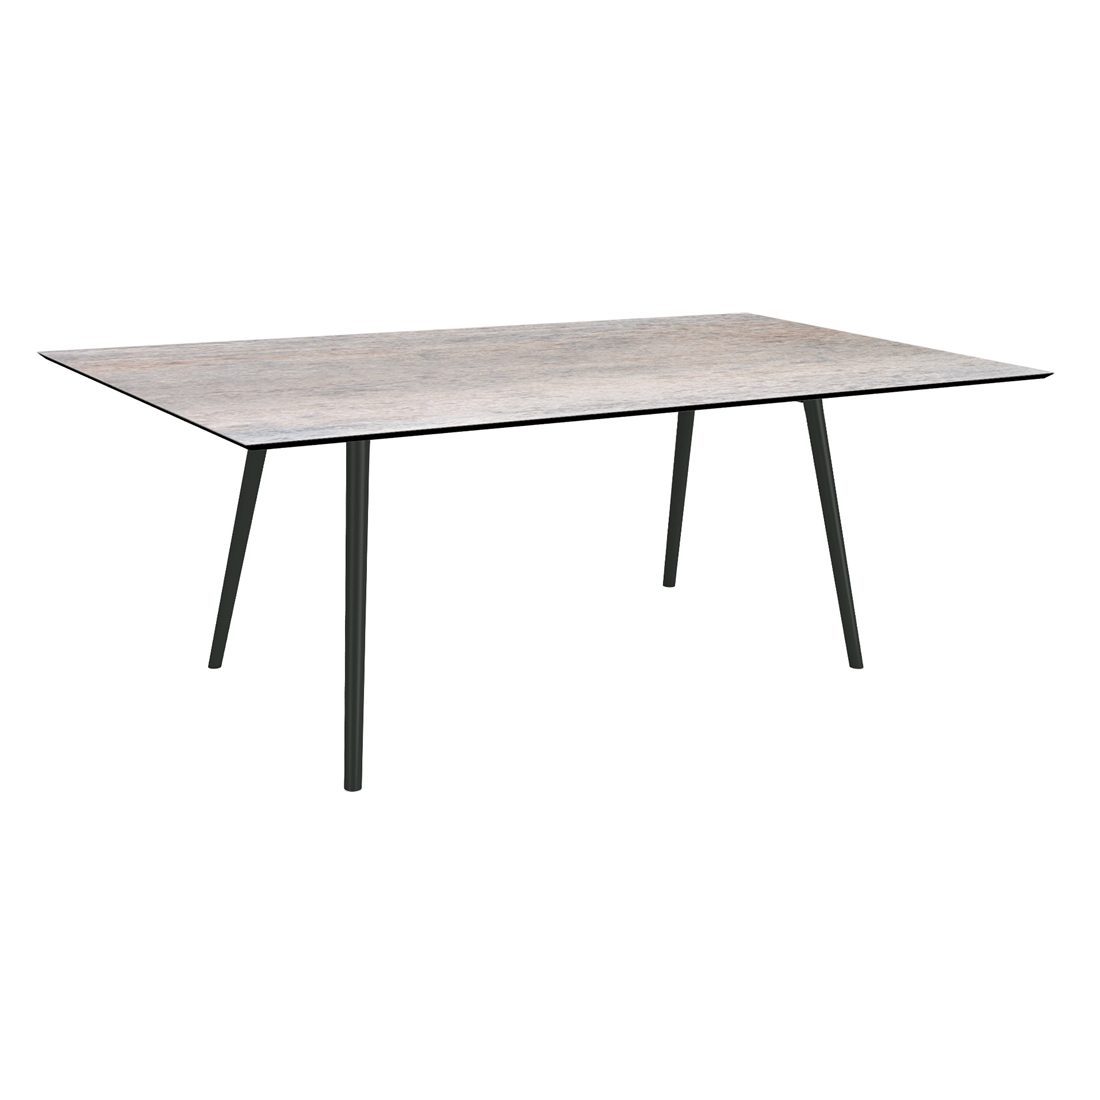 Stern "Interno" Gartentisch, Gestell Alu schwarz matt, Rundrohr, Tischplatte HPL Smoky, 180x100 cm